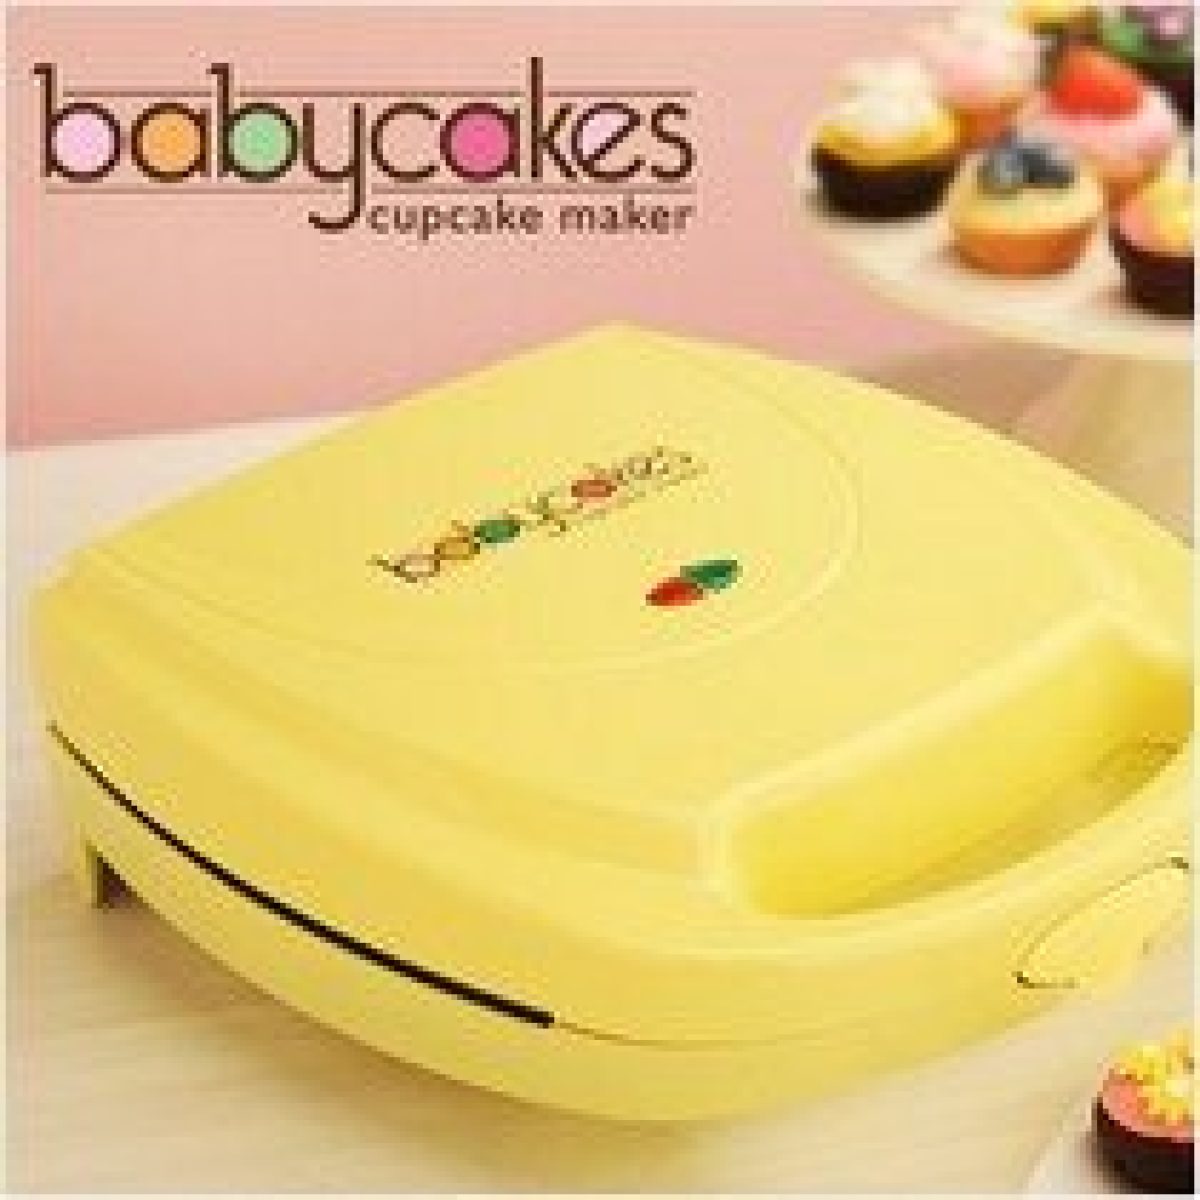 Thursday's Thingamajig: BABYCAKES Cupcake Maker